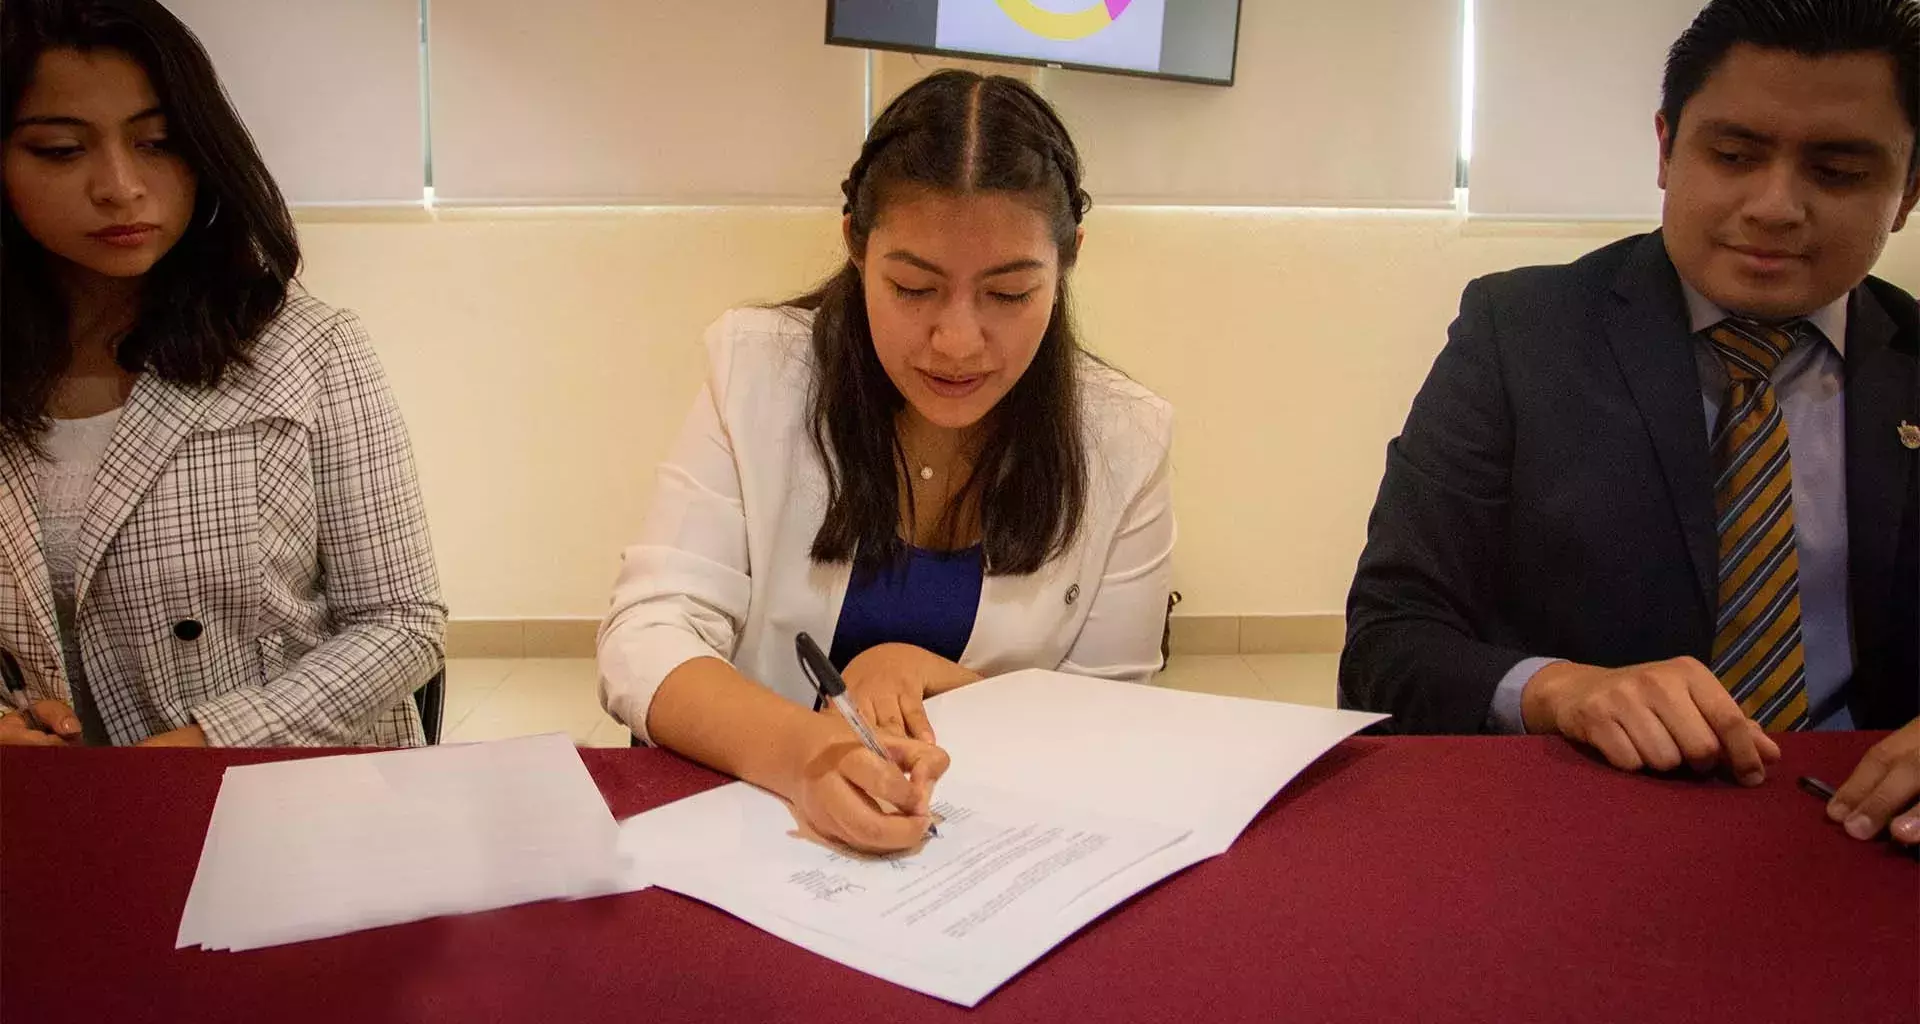 La firma entre universidades confirma los lazos de amistad de la comunidad estudiantil de Puebla.